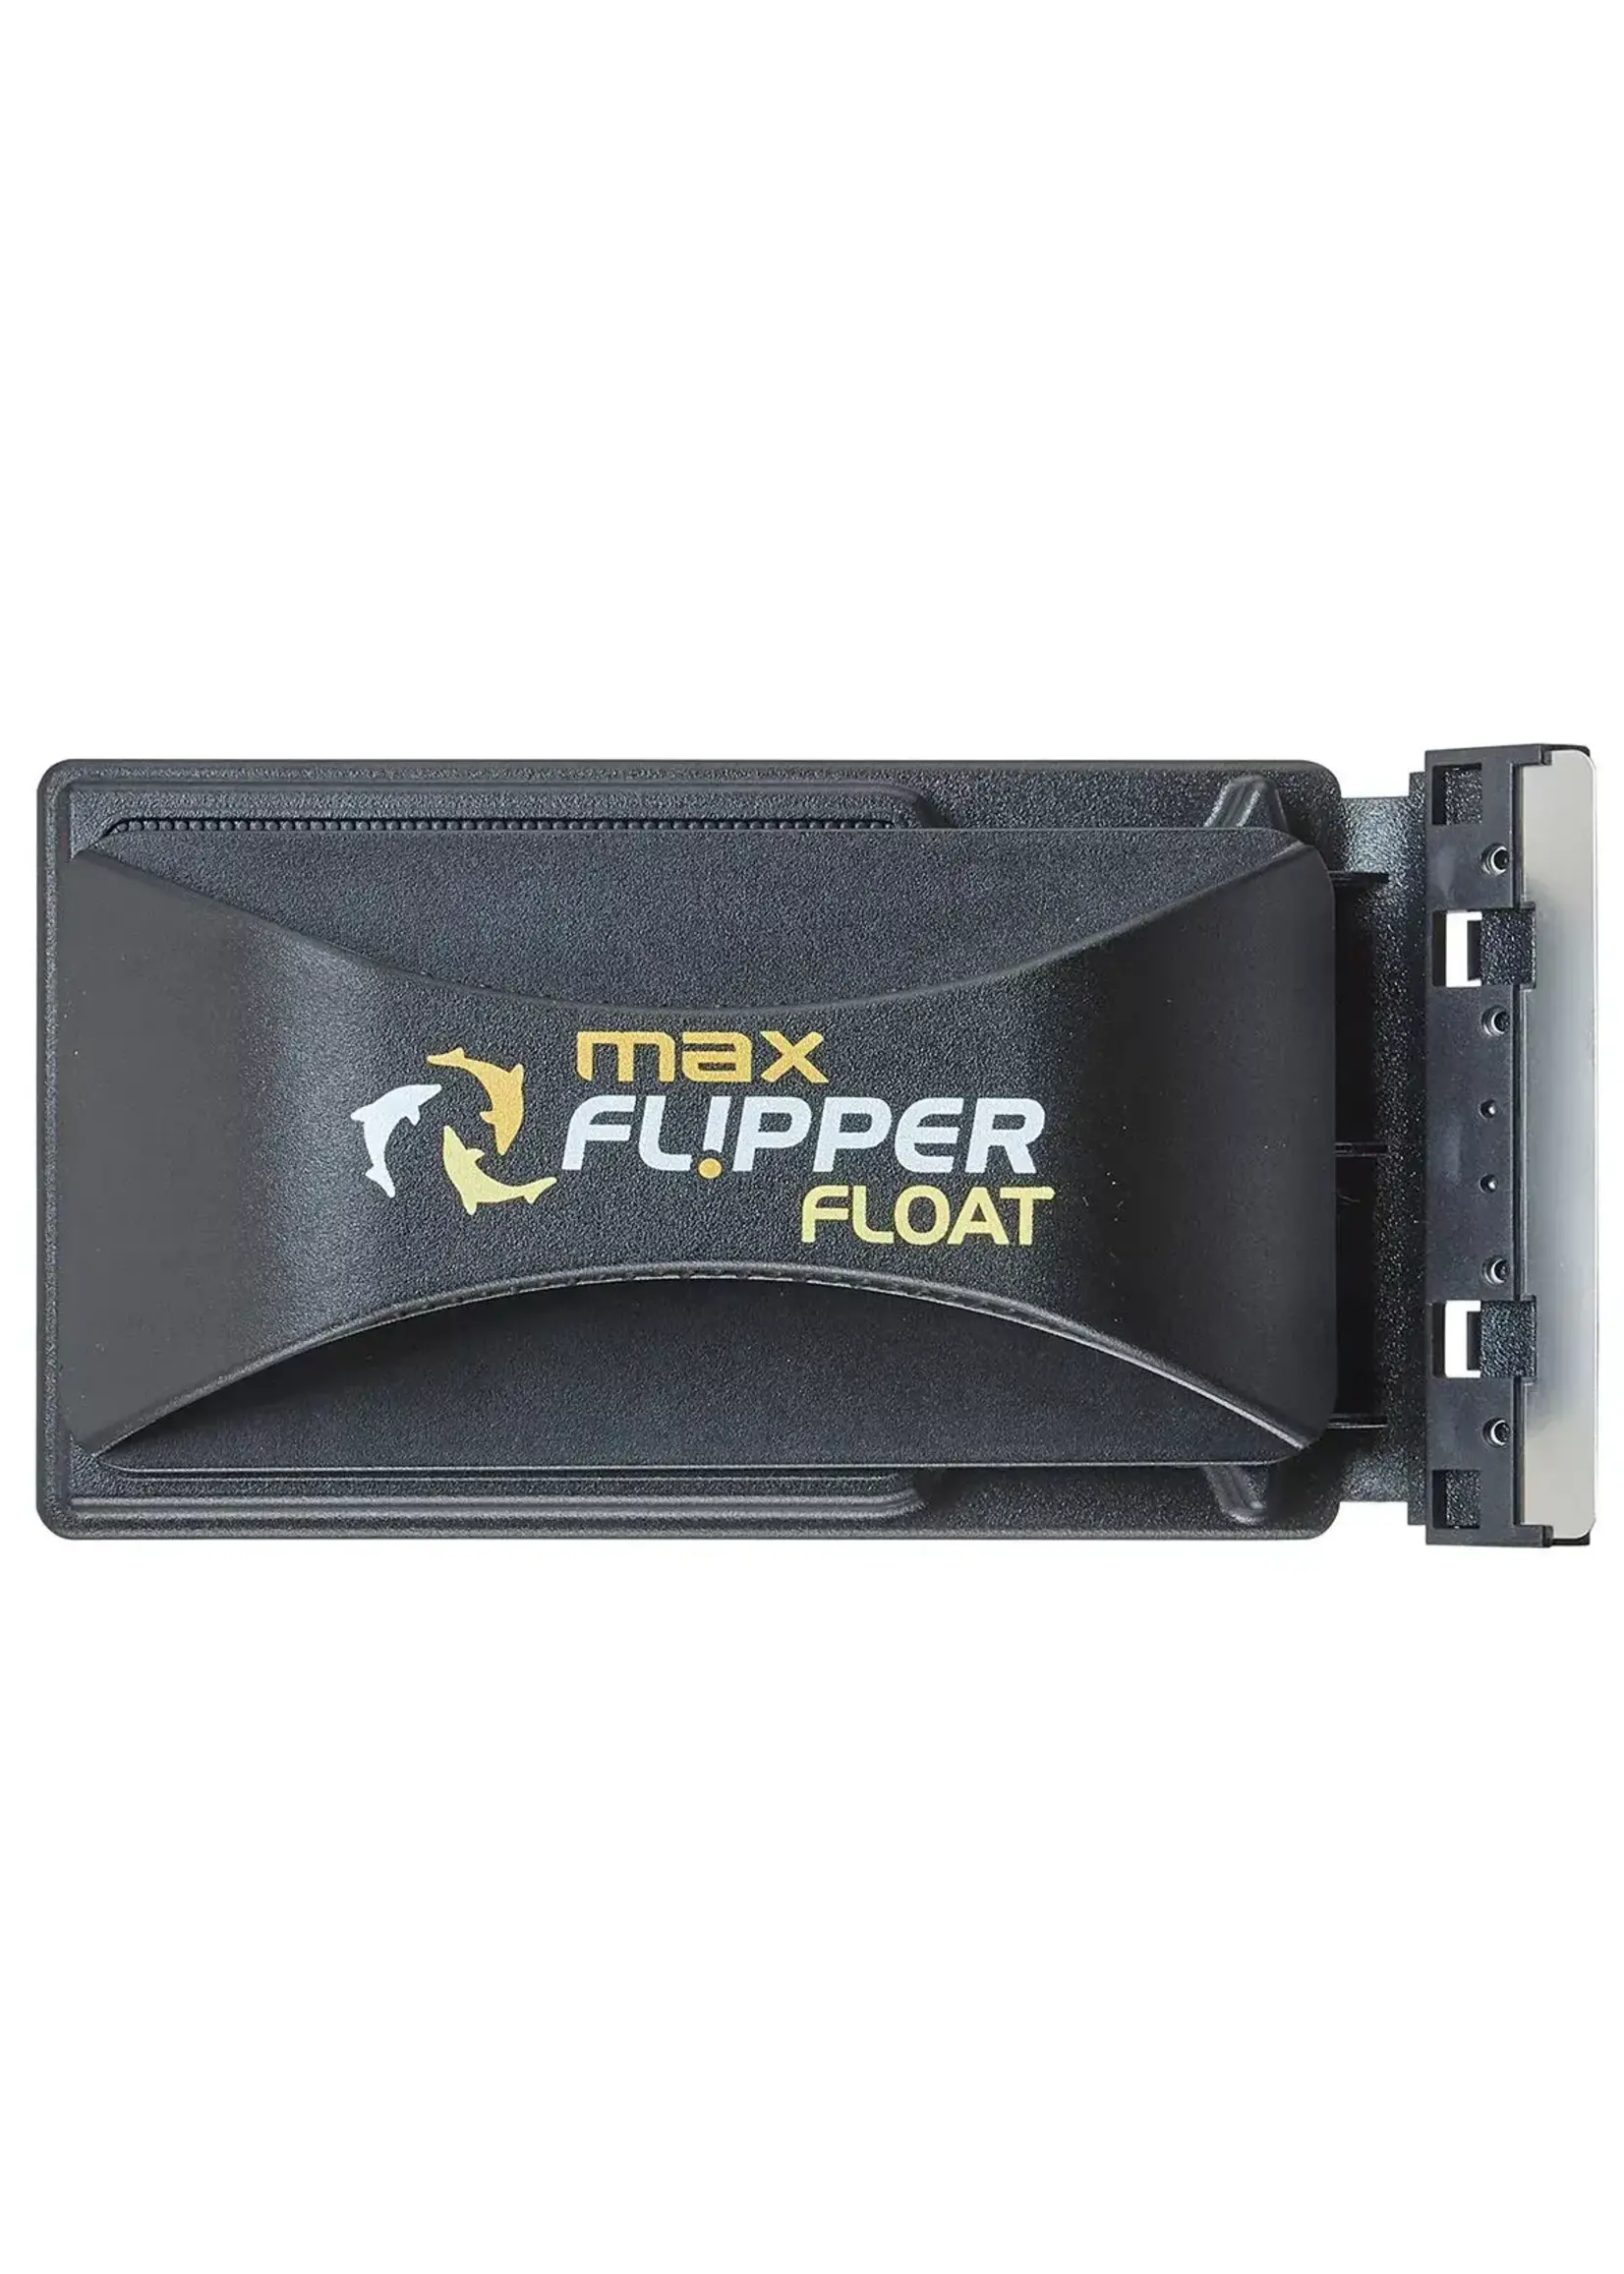 Flipper MAX FLOAT 2 IN 1 MAGNETIC AQUARIUM CLEANER